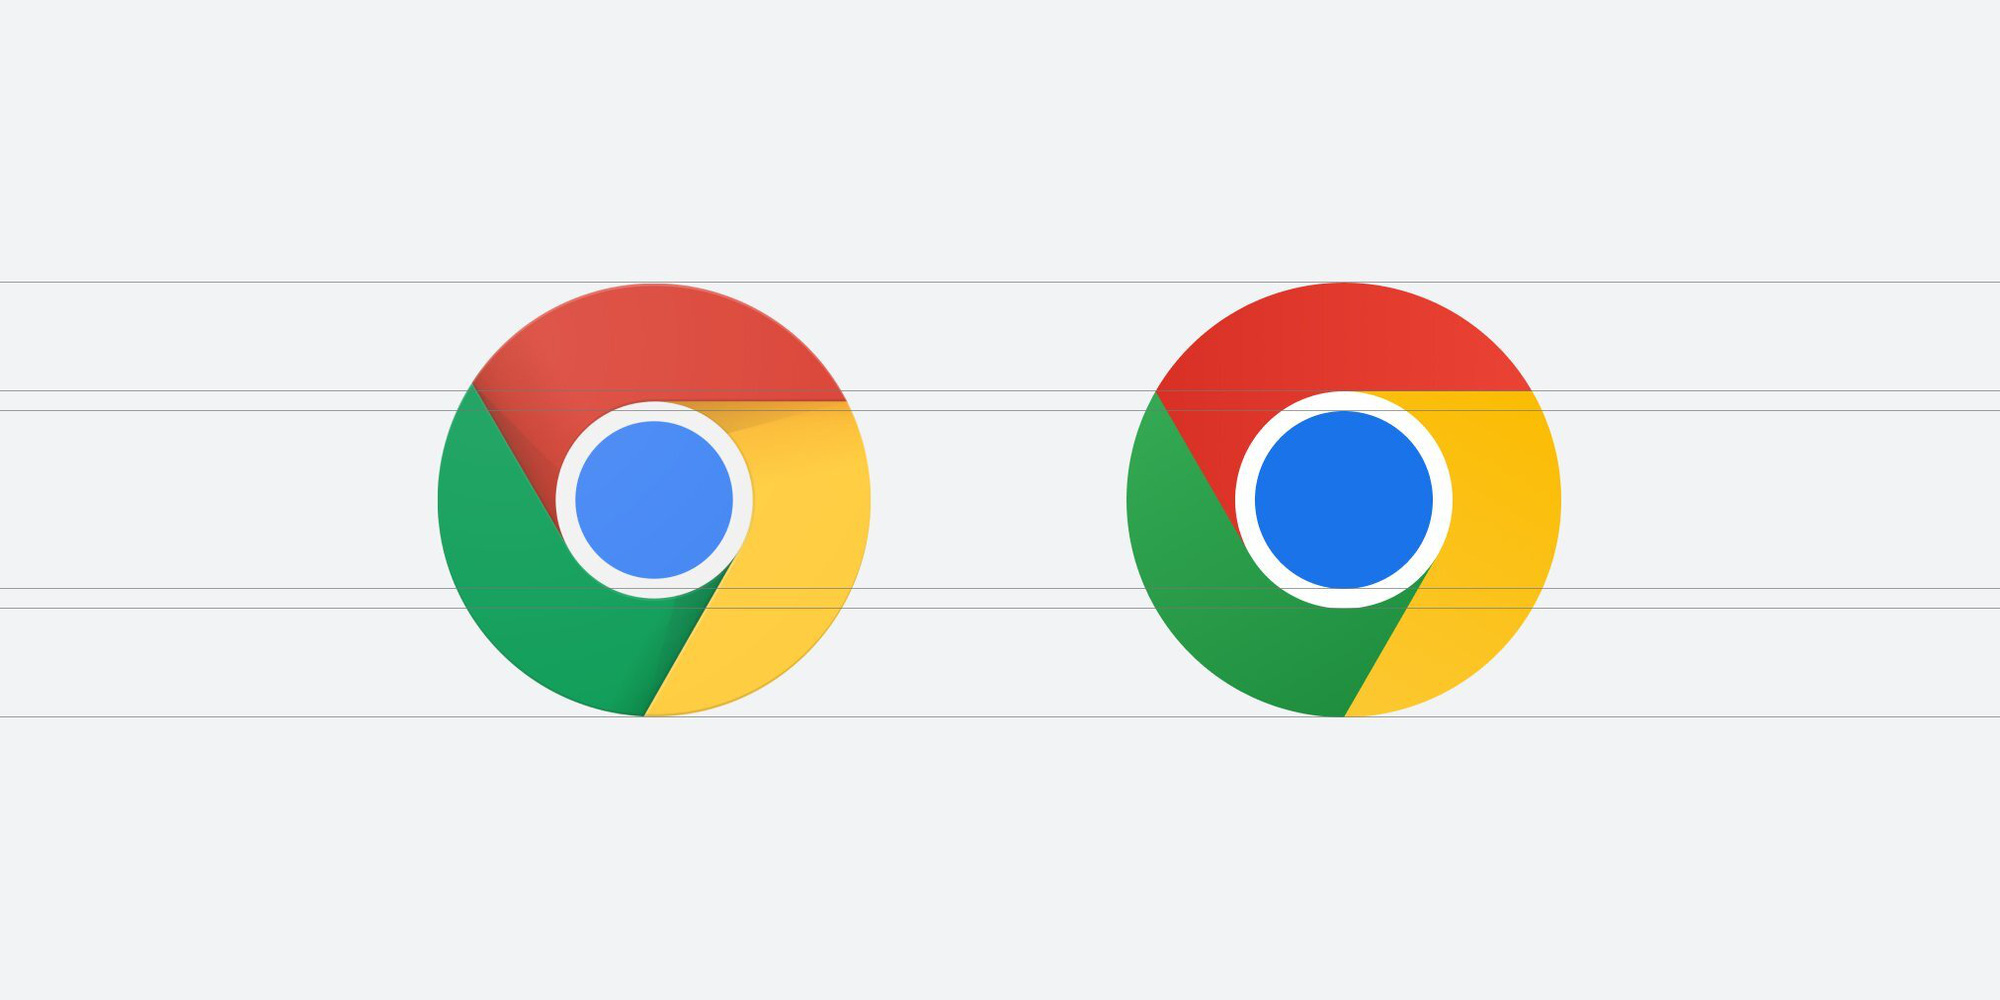 Google Chrome logo mới: Google vừa ra mắt phiên bản mới của logo Chrome, mang đến trải nghiệm mới mẻ và đầy bất ngờ cho người dùng trên toàn thế giới. Hãy cập nhật ngay để cảm nhận một Chrome hoàn toàn khác biệt!